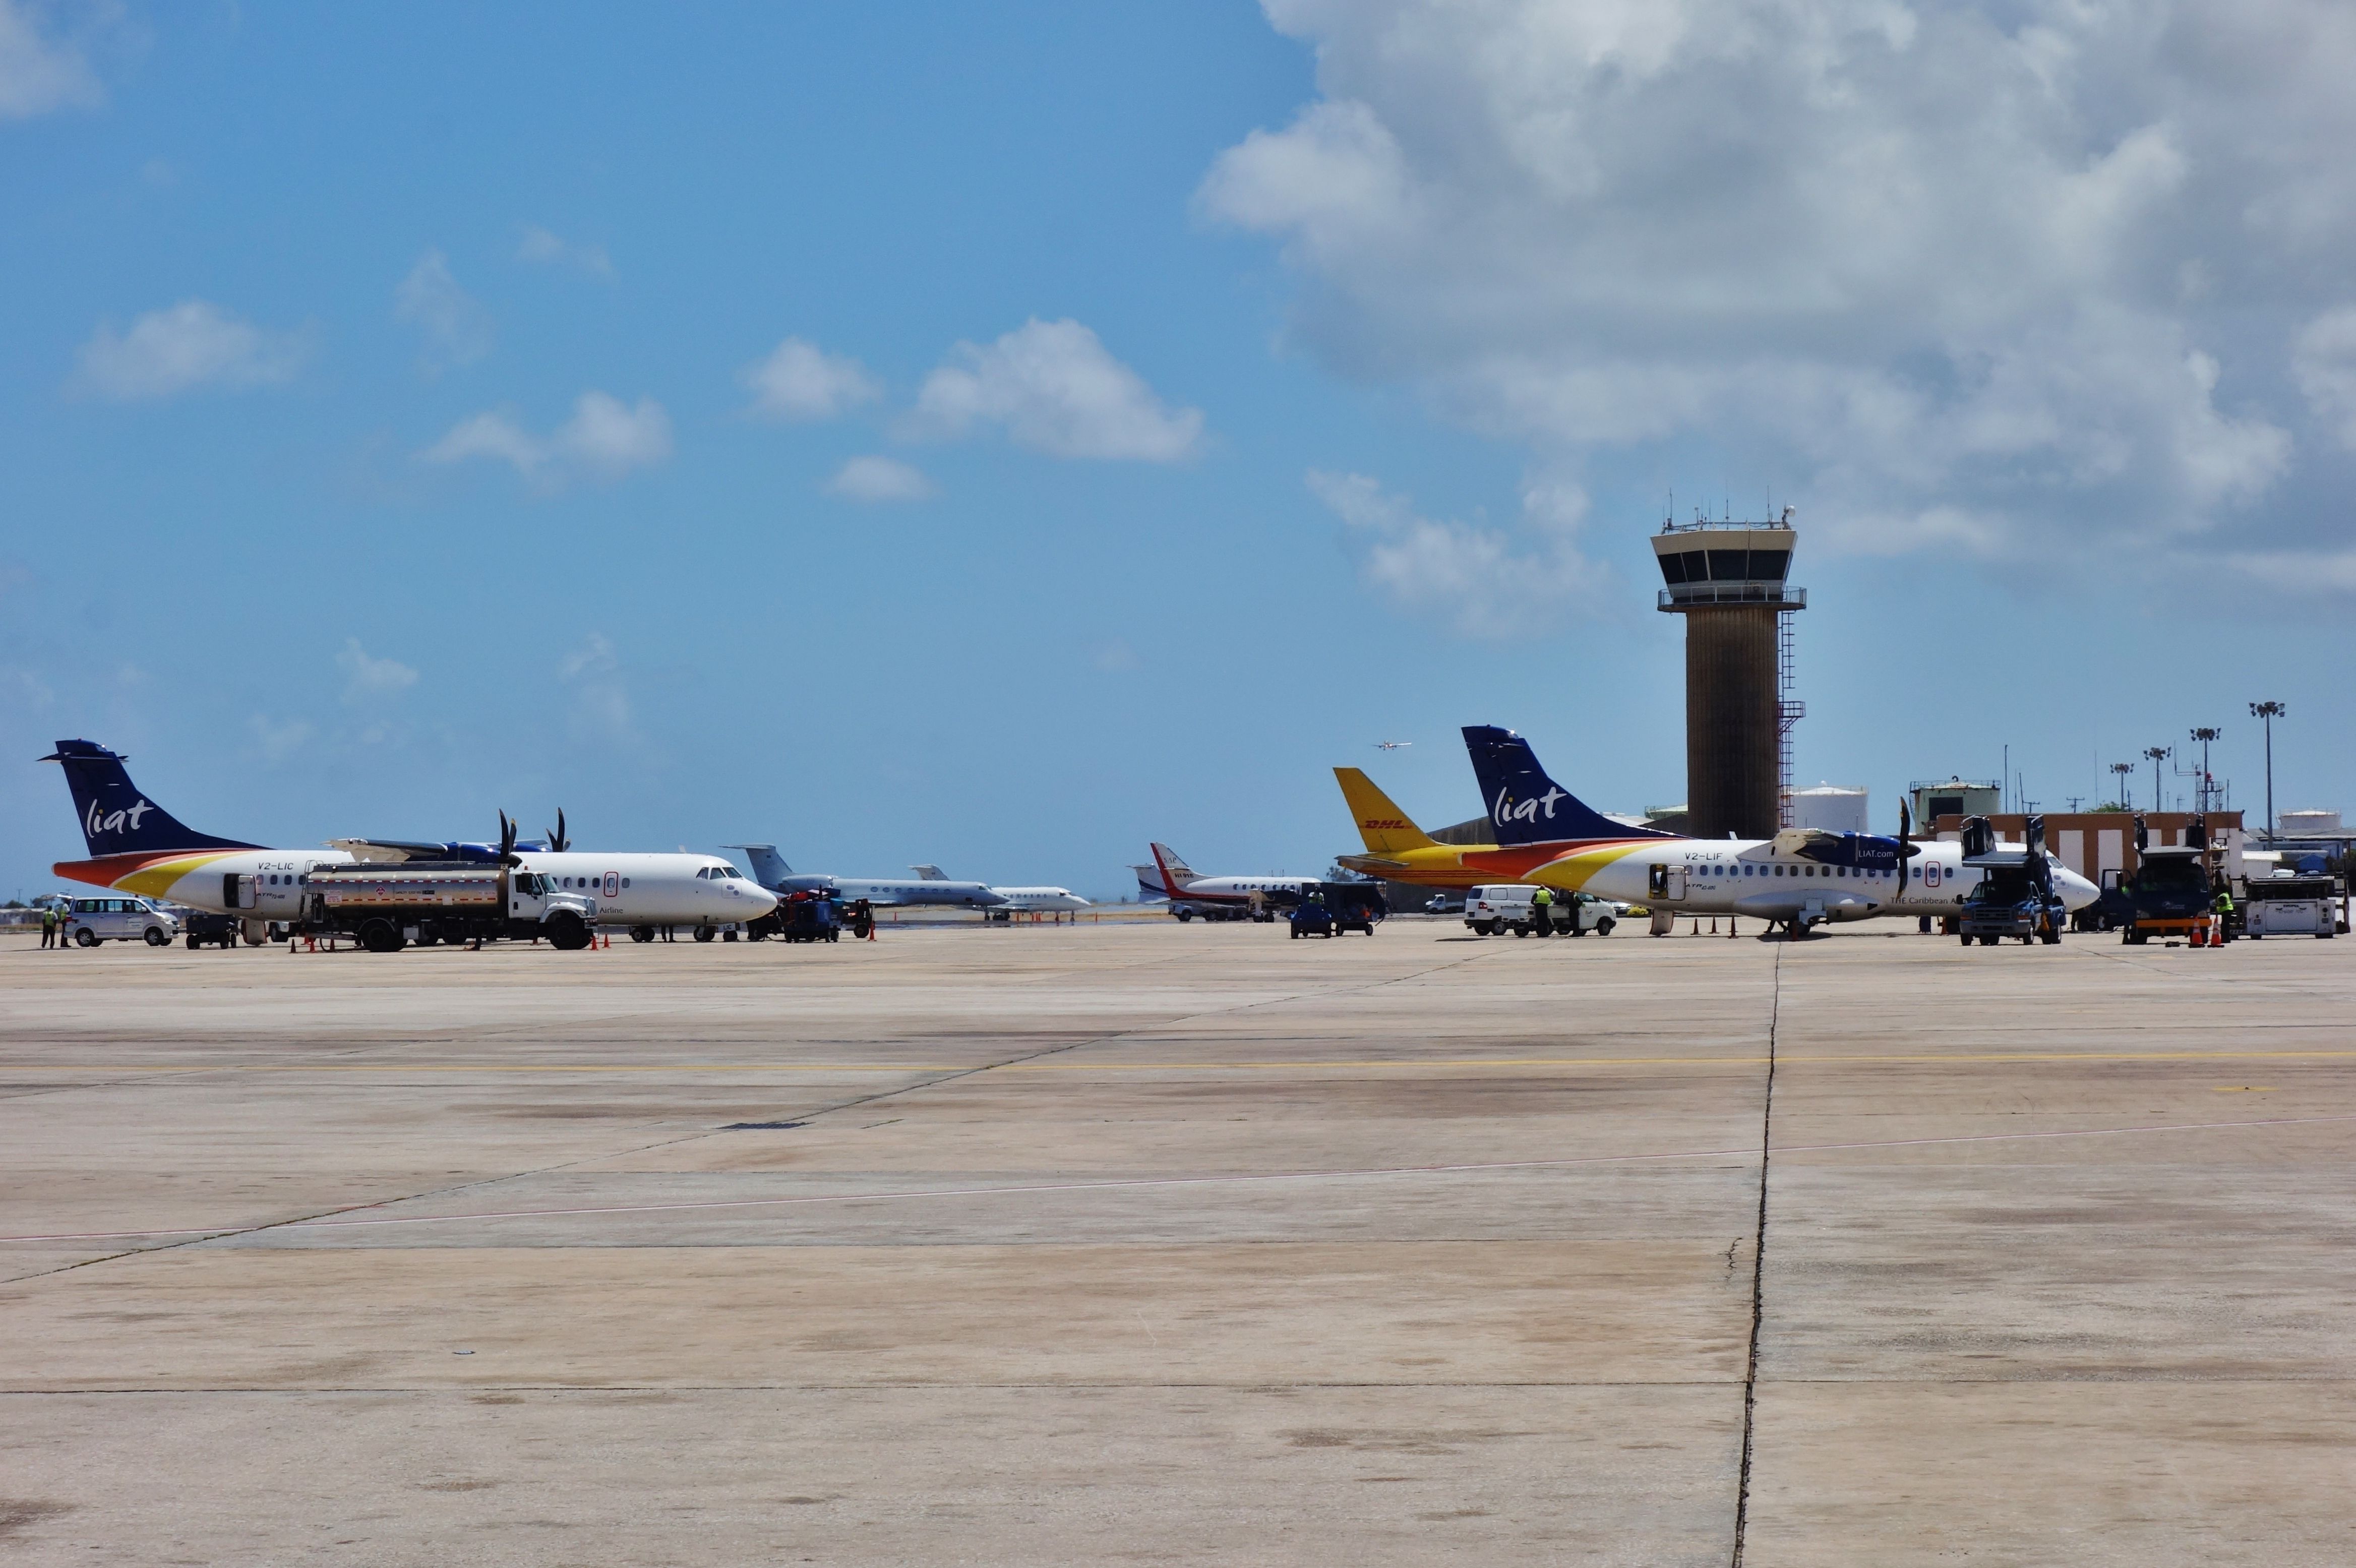 LIAT ATR42s at Grantley Adams Airport Barbados